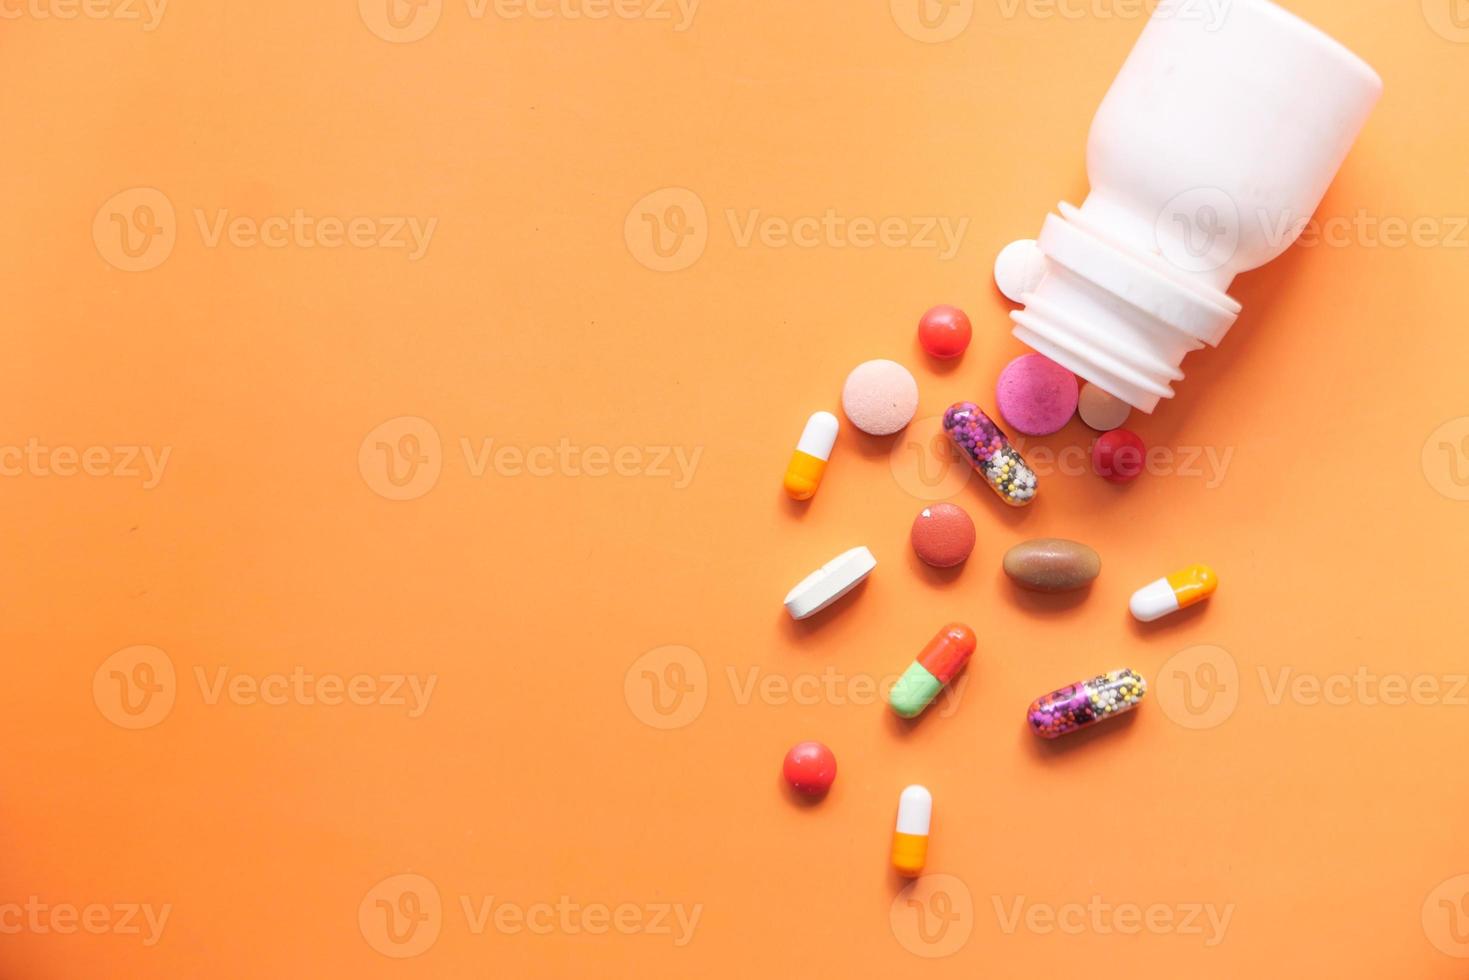 kleurrijke pillen morsen op kleur achtergrond foto